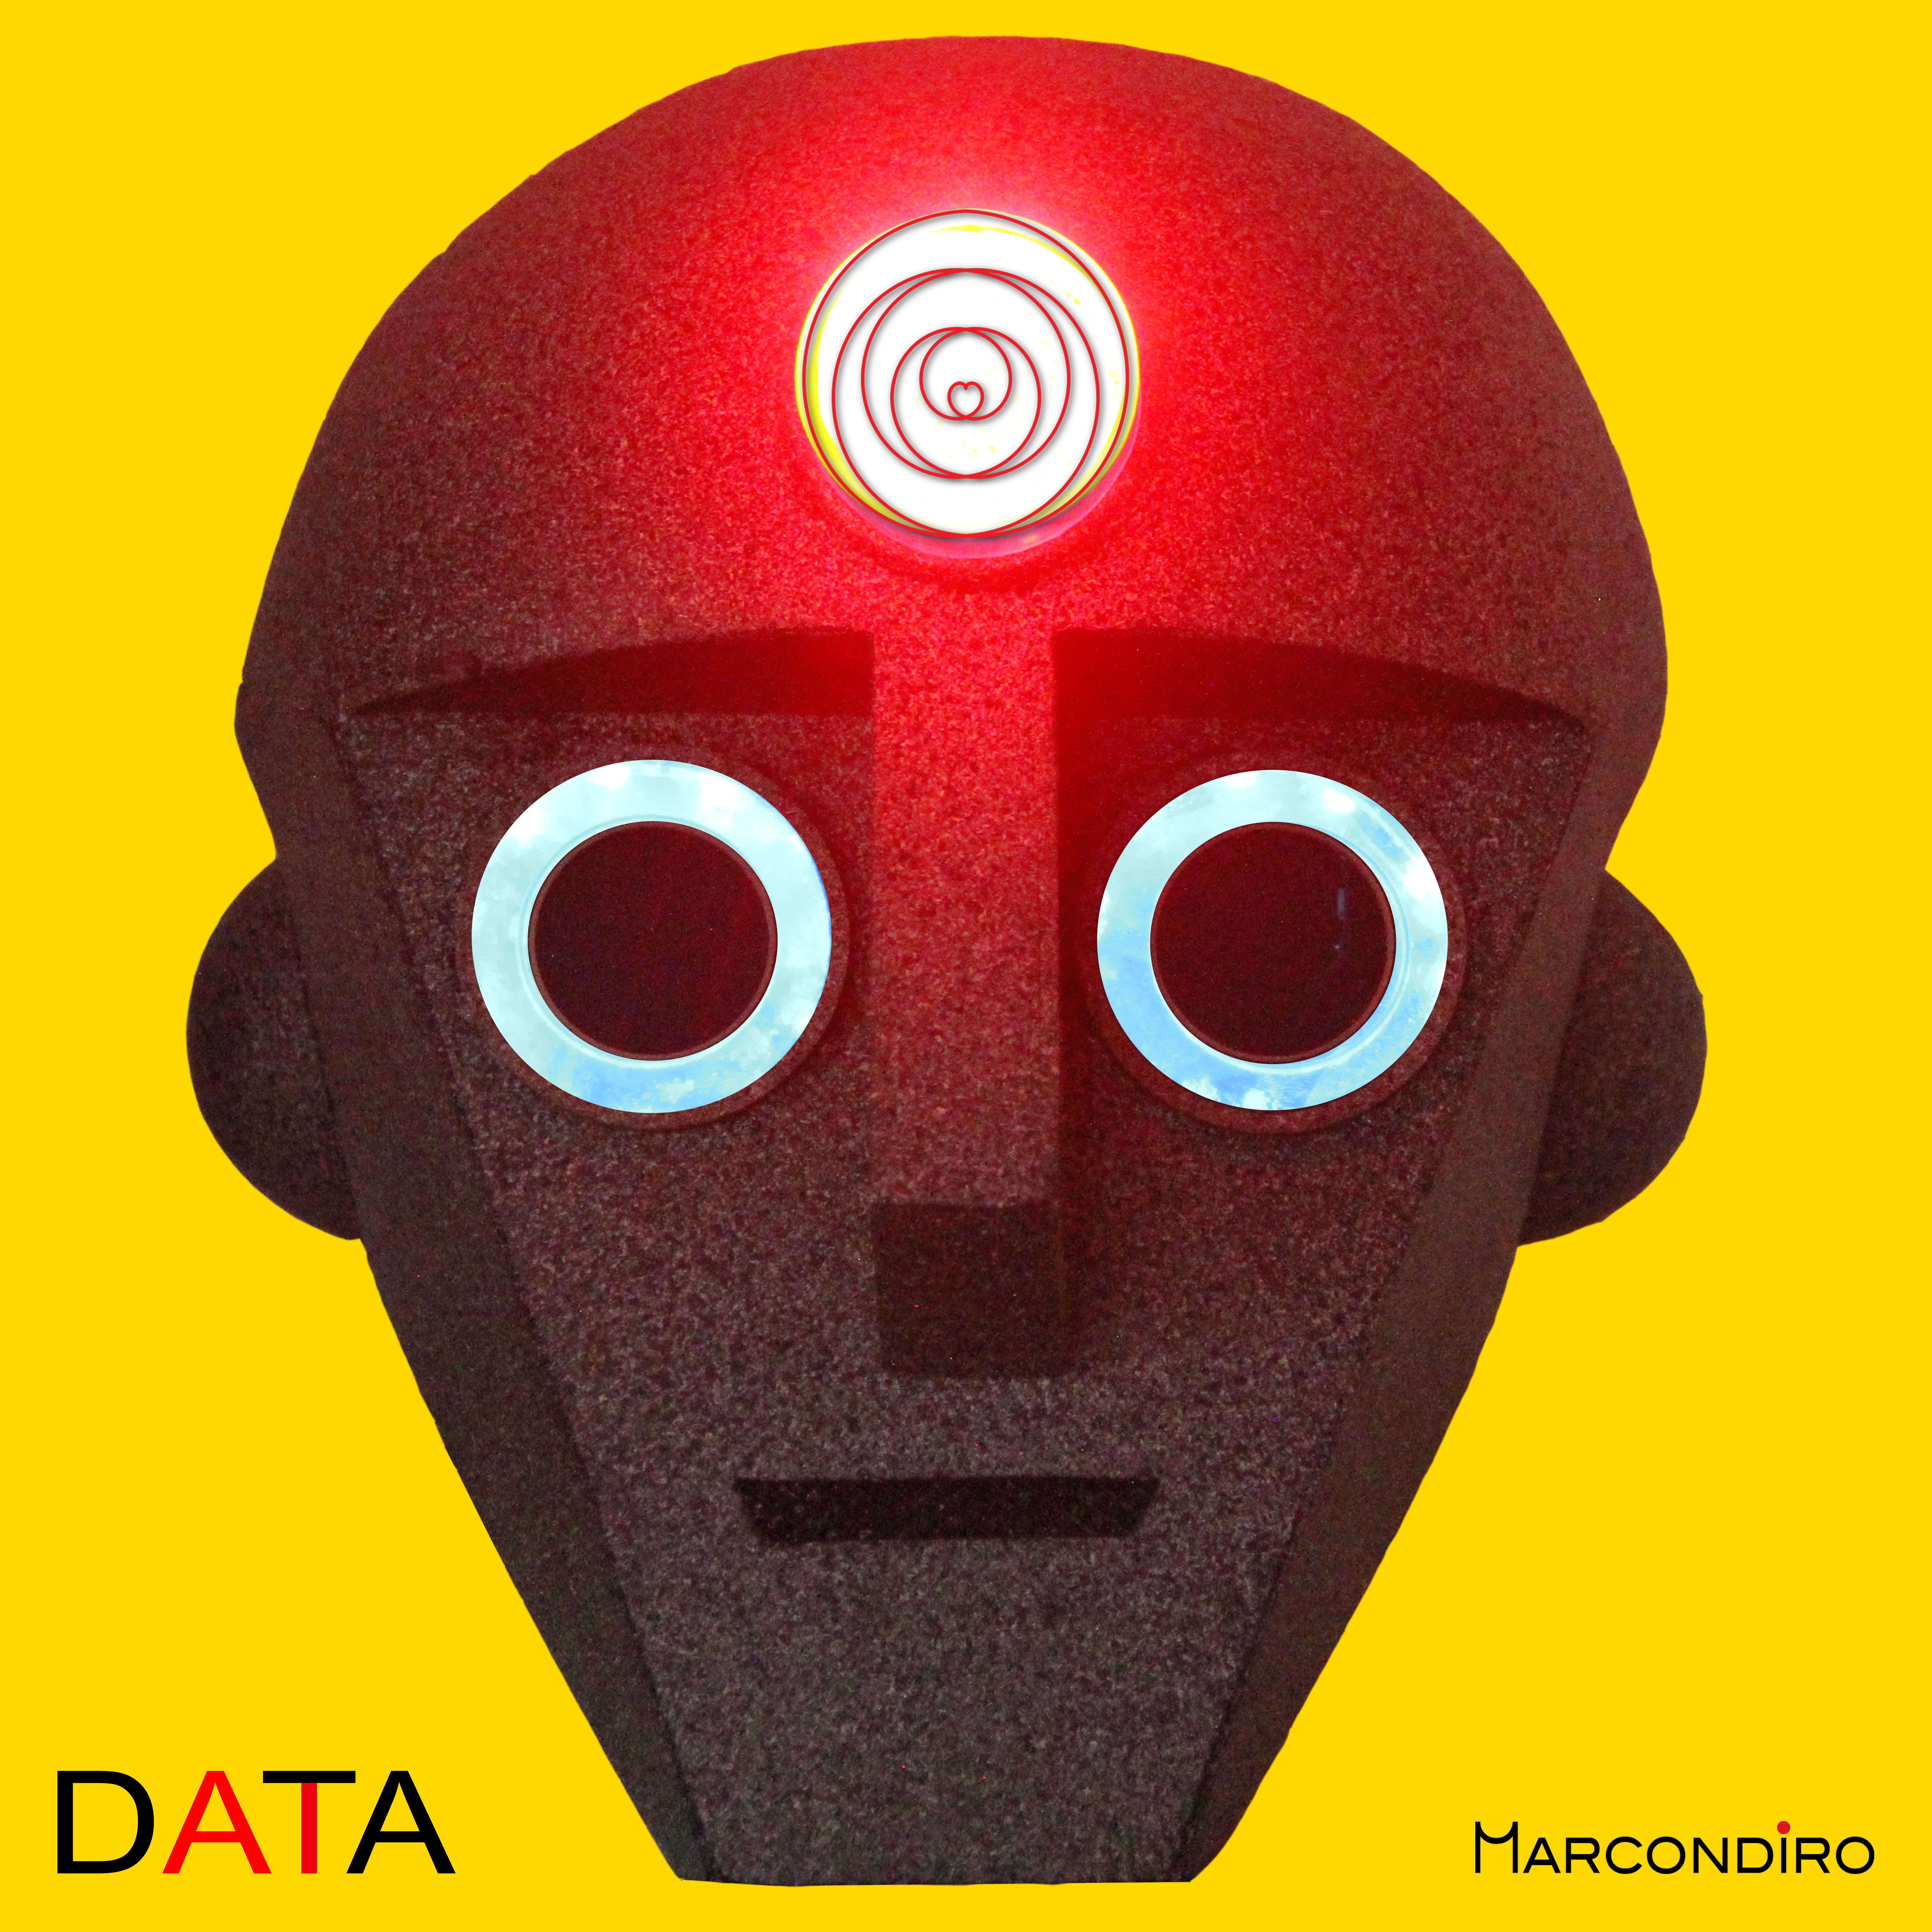 Esce “DATA”: il terzo album del progetto artistico MARCONDIRO